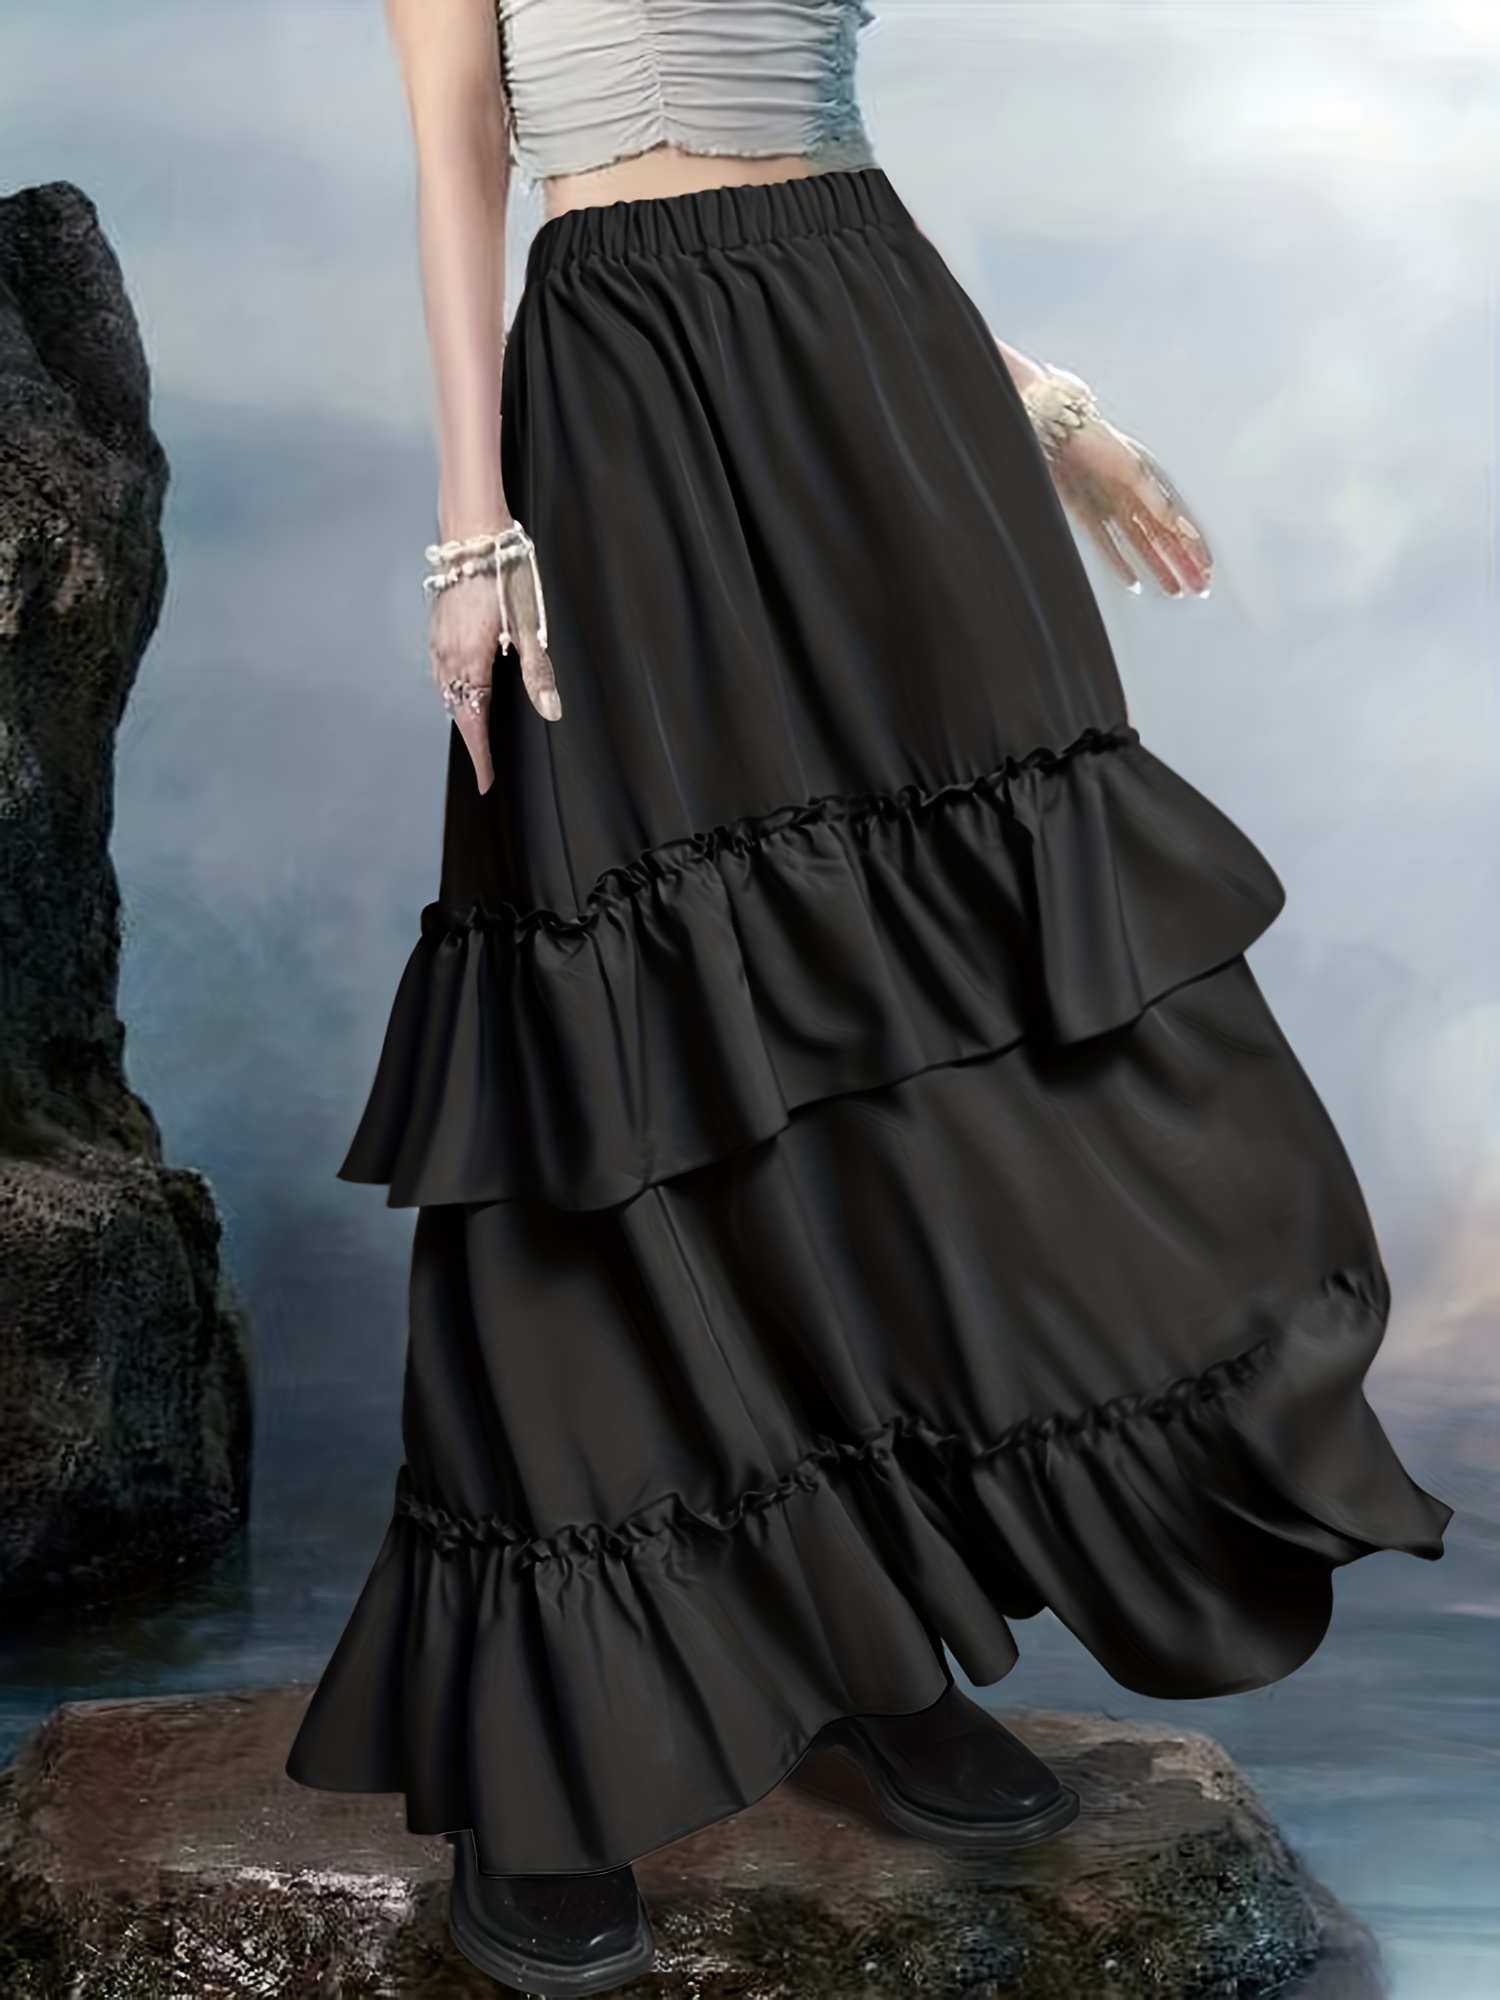 Arnés para mujer Steampunk, estilo gótico, de piel sintética, con remaches,  accesorio para disfraz (901-negro)